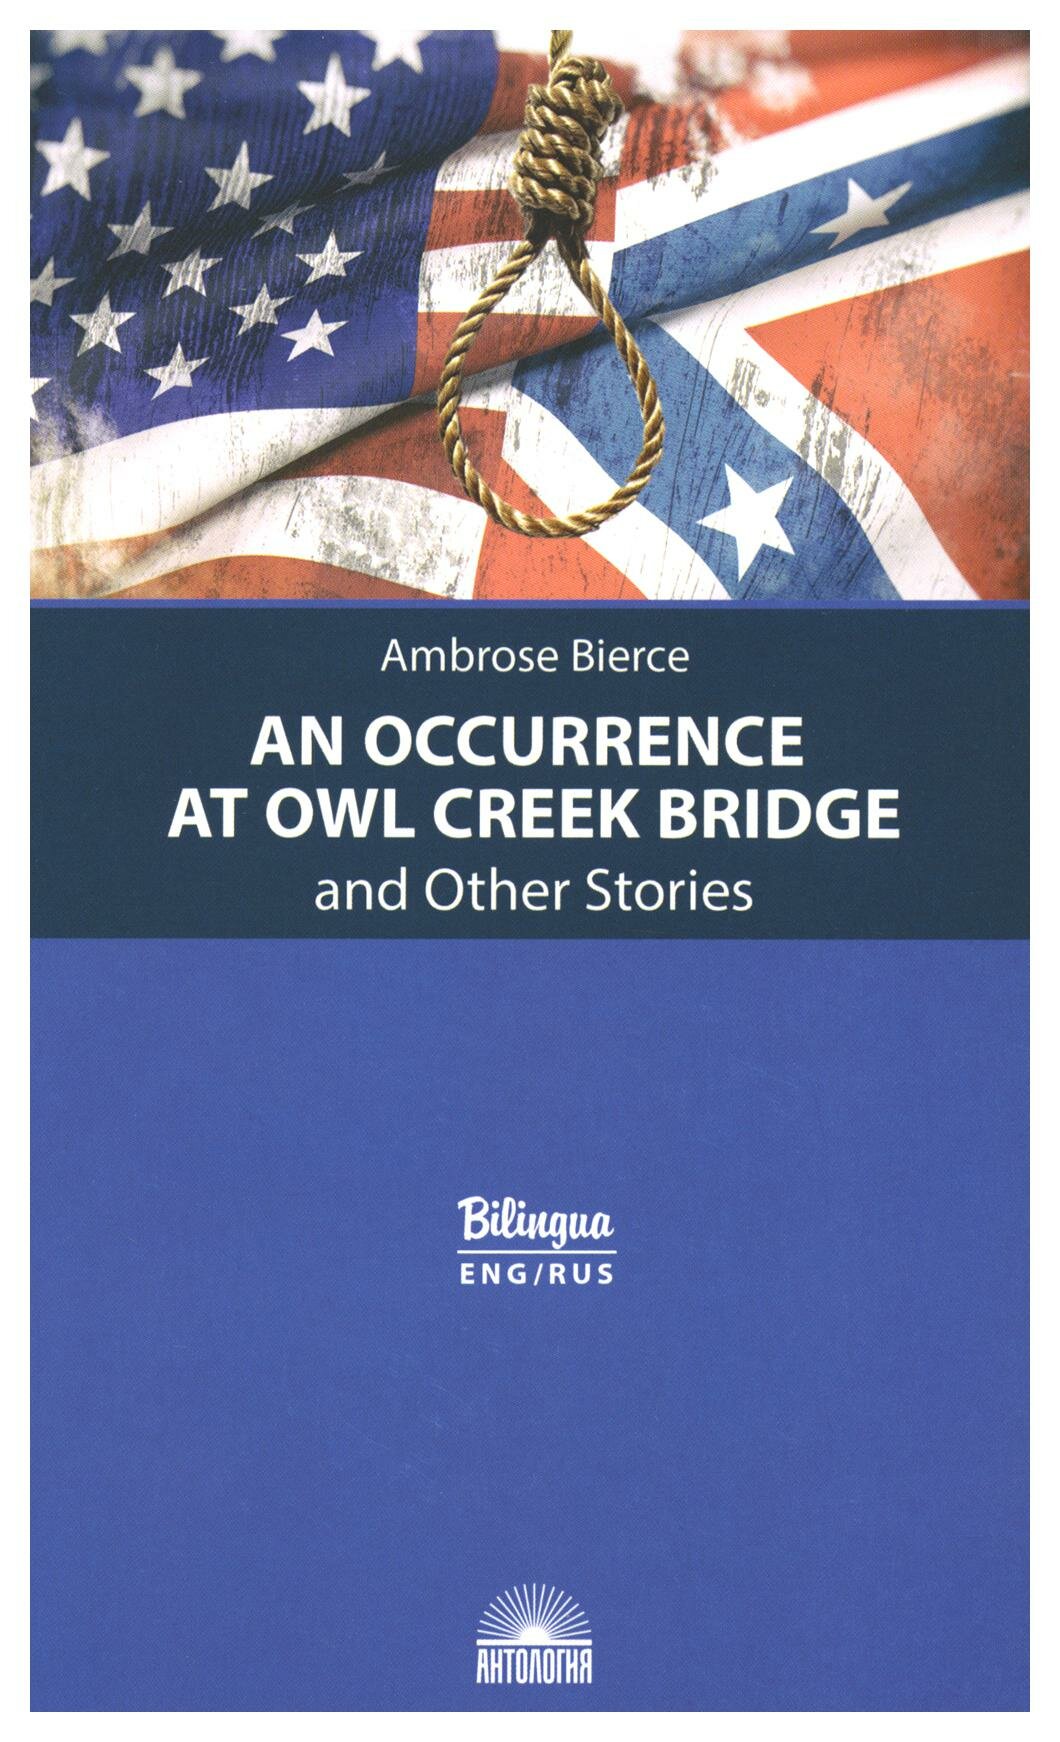 An Occurrence at Owl Creek Bridge and Other Stories = "Случай на мосту через Совиный ручей" и другие рассказы: текст на английском и русском языках